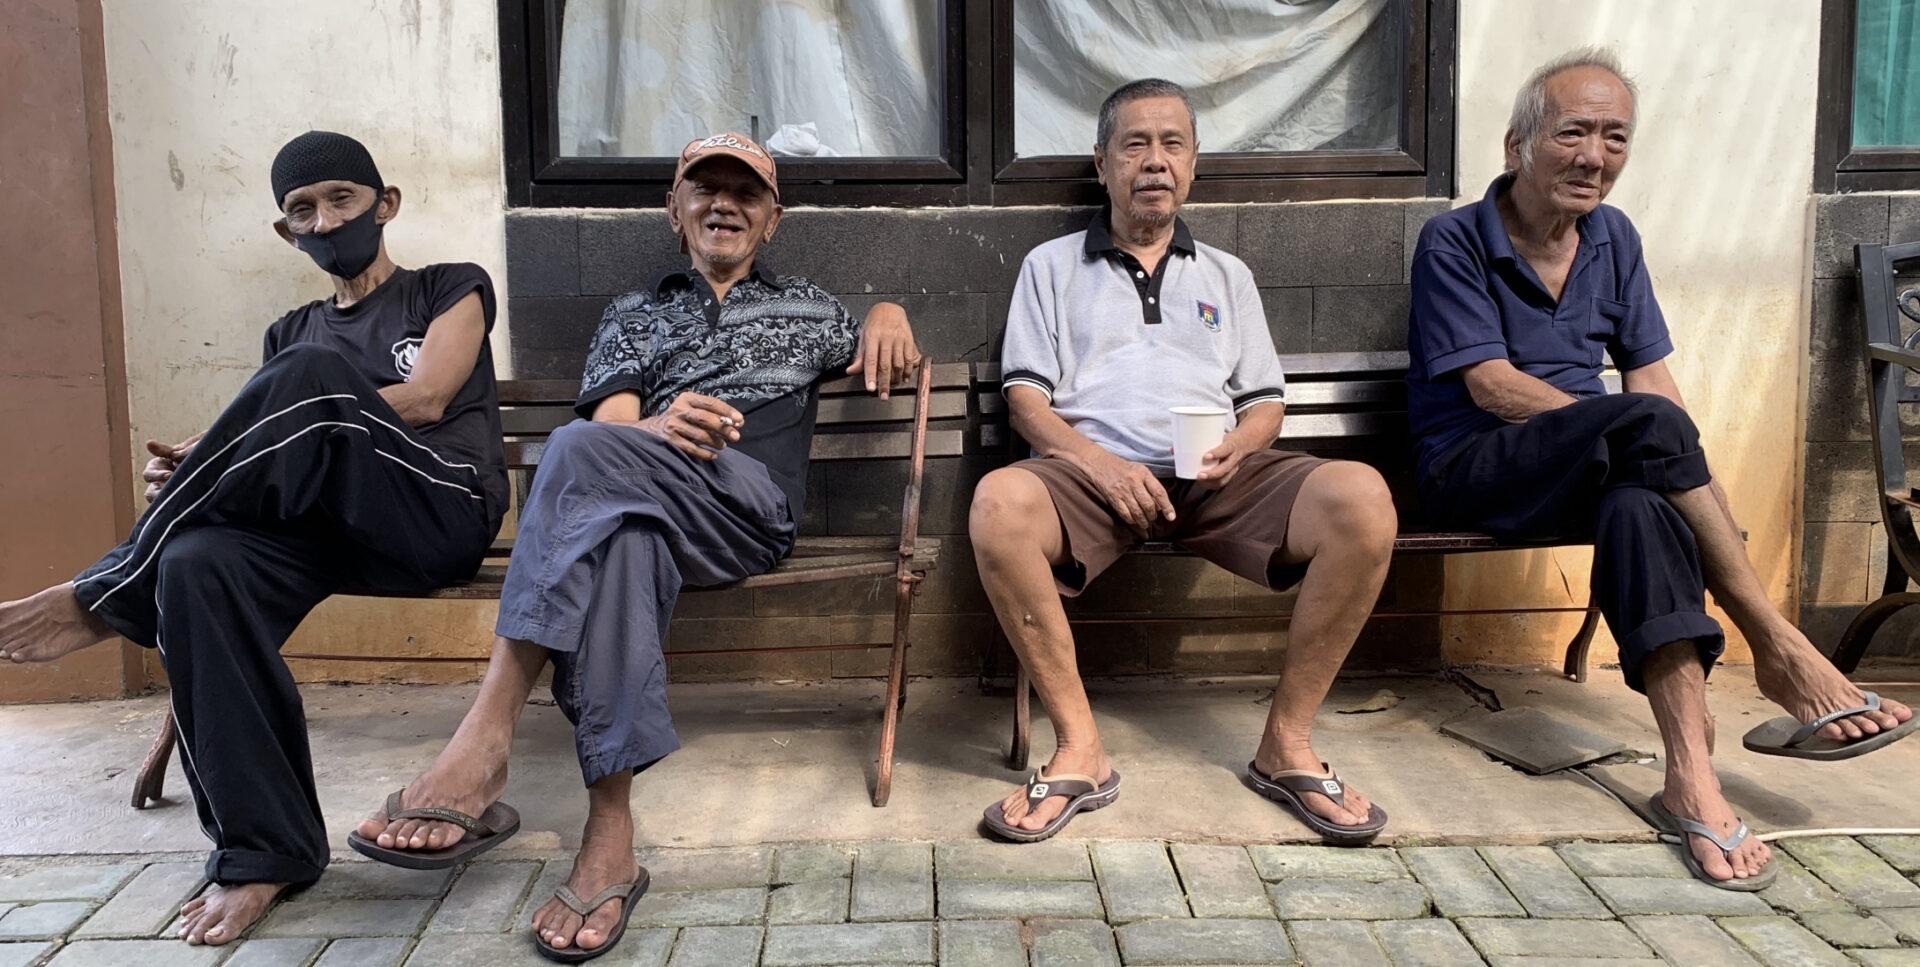 Indonesische mannen op bank bij TBM3.